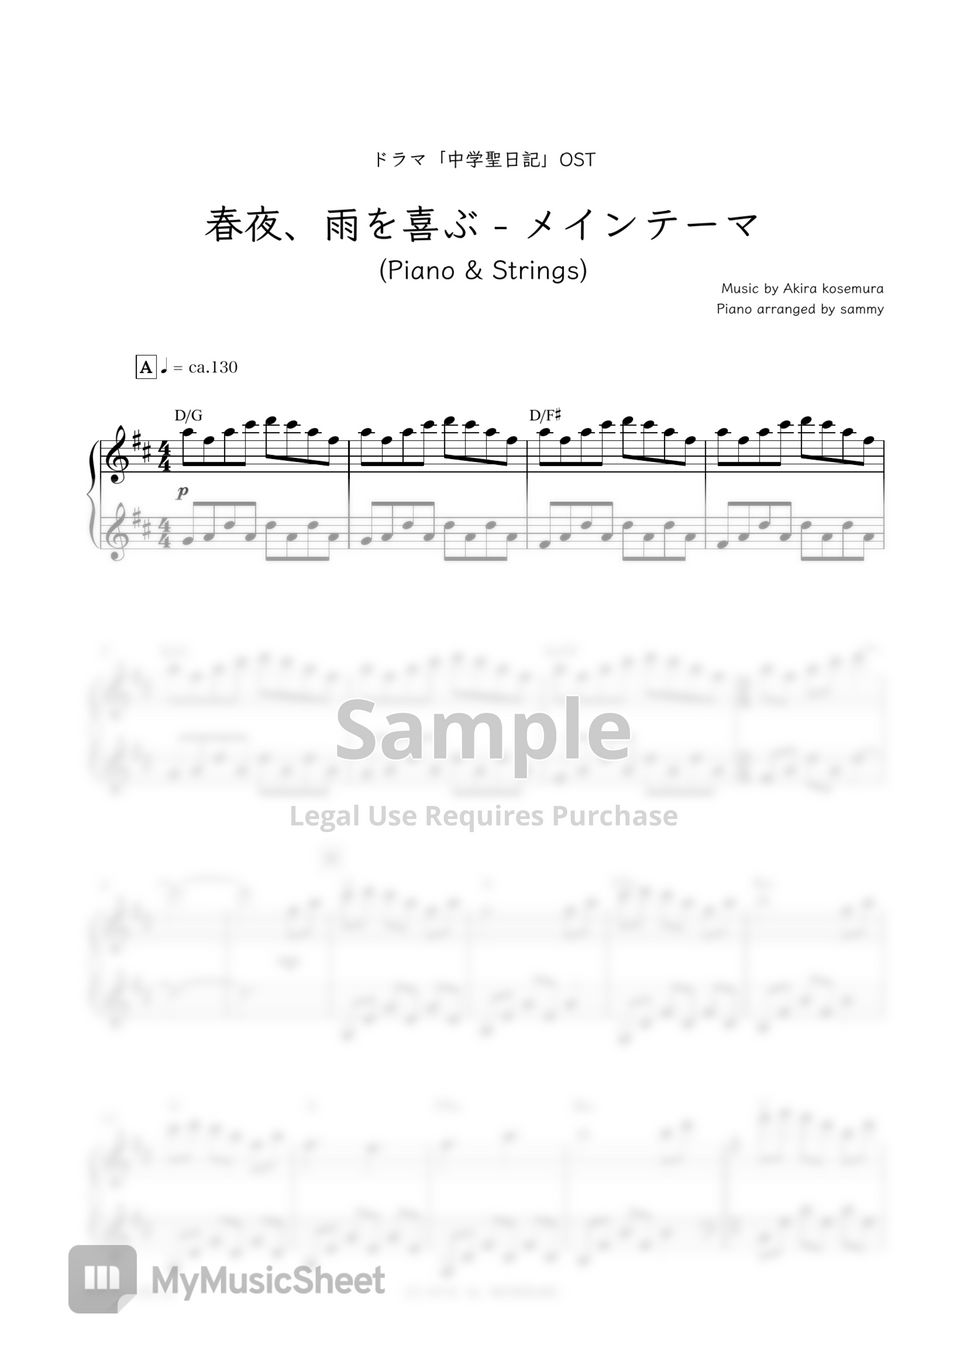 Japanese Drama "Chūgakusei Nikki(中学聖日記)" OST - Shunya, Ame Wo Yorokobu - Main Thema [Piano & Strings] (春夜、雨を喜ぶ - メインテーマ [Piano & Strings]) by sammy